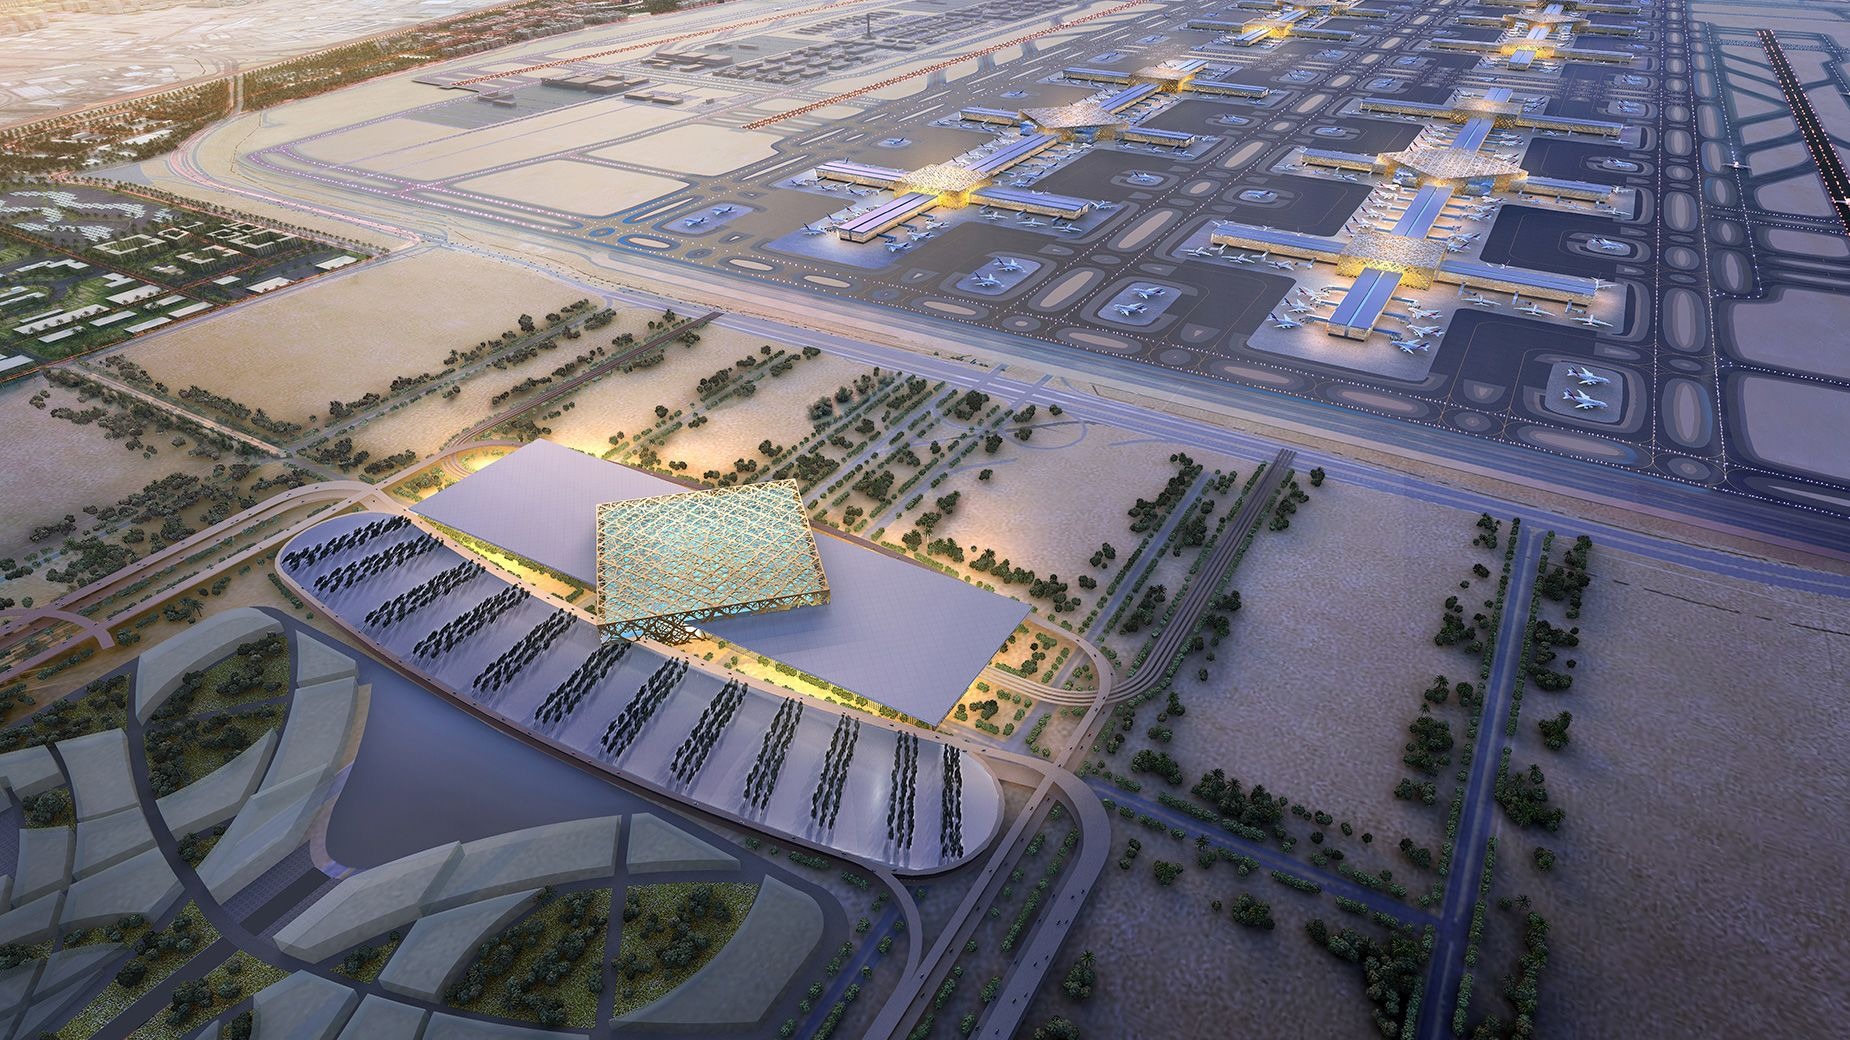 Quốc vương Dubai đã phê duyệt xây dựng nhà ga hành khách mới có tổng mức đầu tư gần 35 tỷ USD tại sân bay Trung tâm Thế giới Dubai. (Ảnh: CNN)